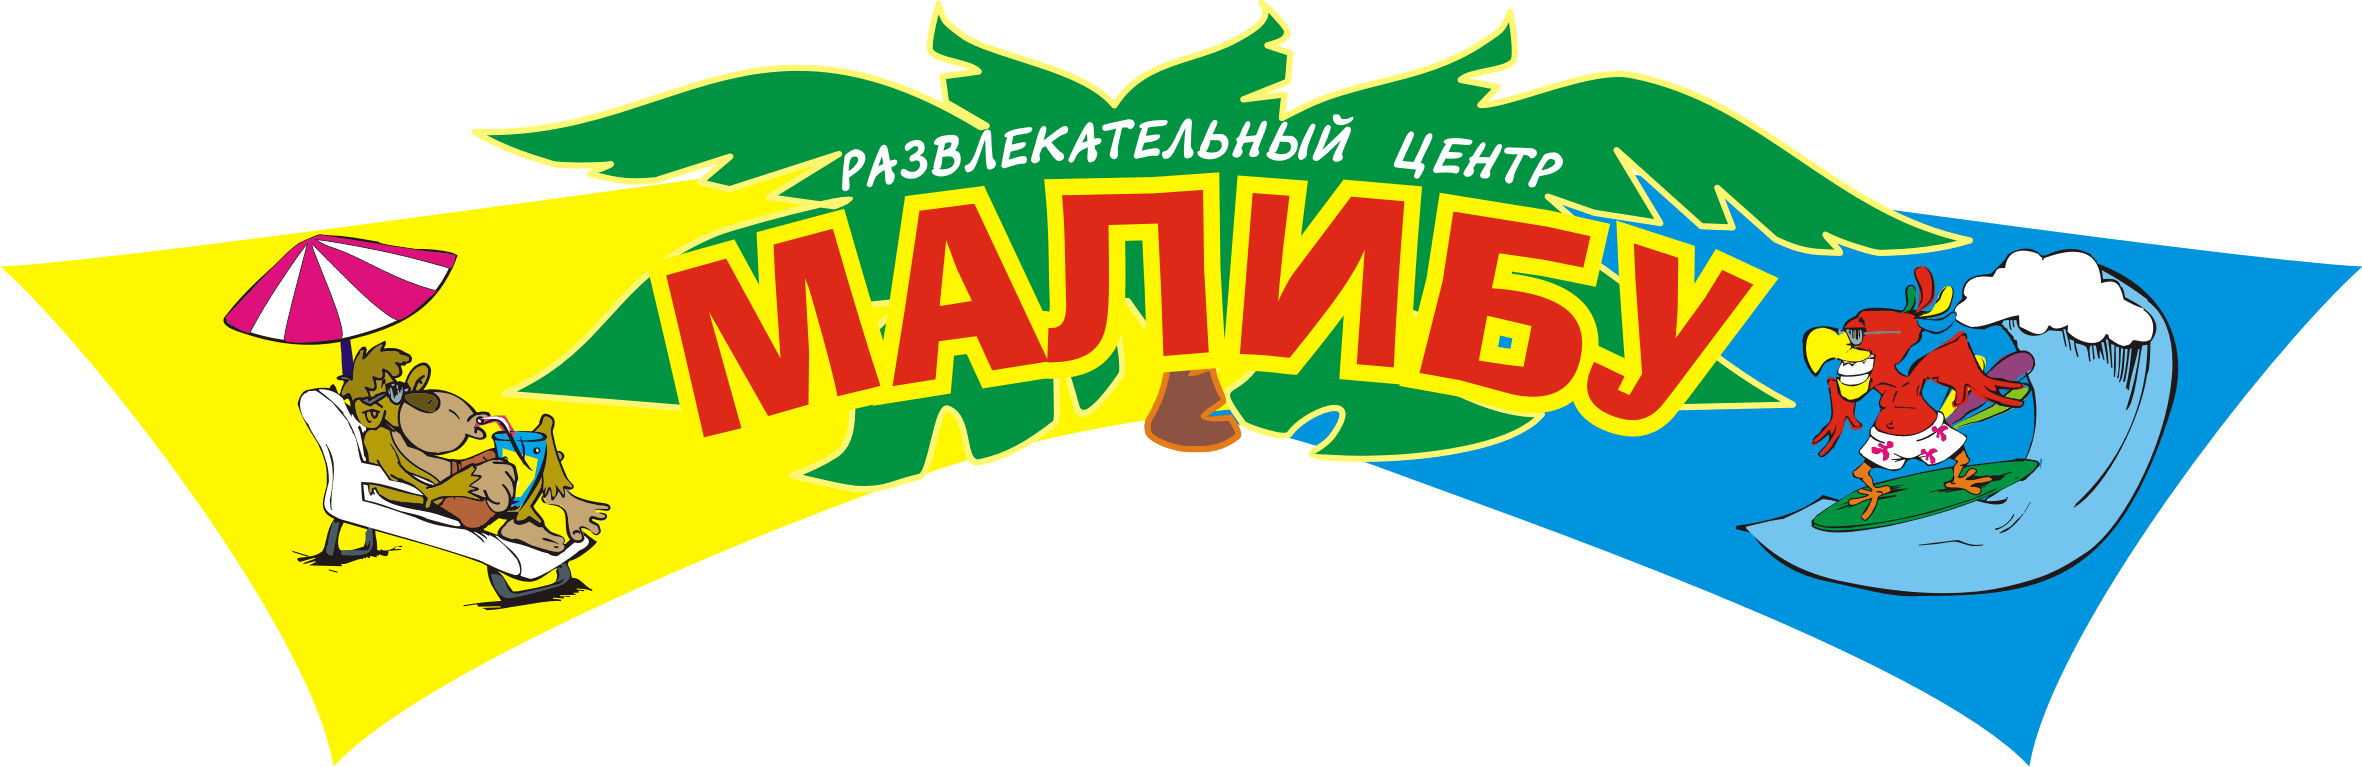 malibu-nizhnevartovsk